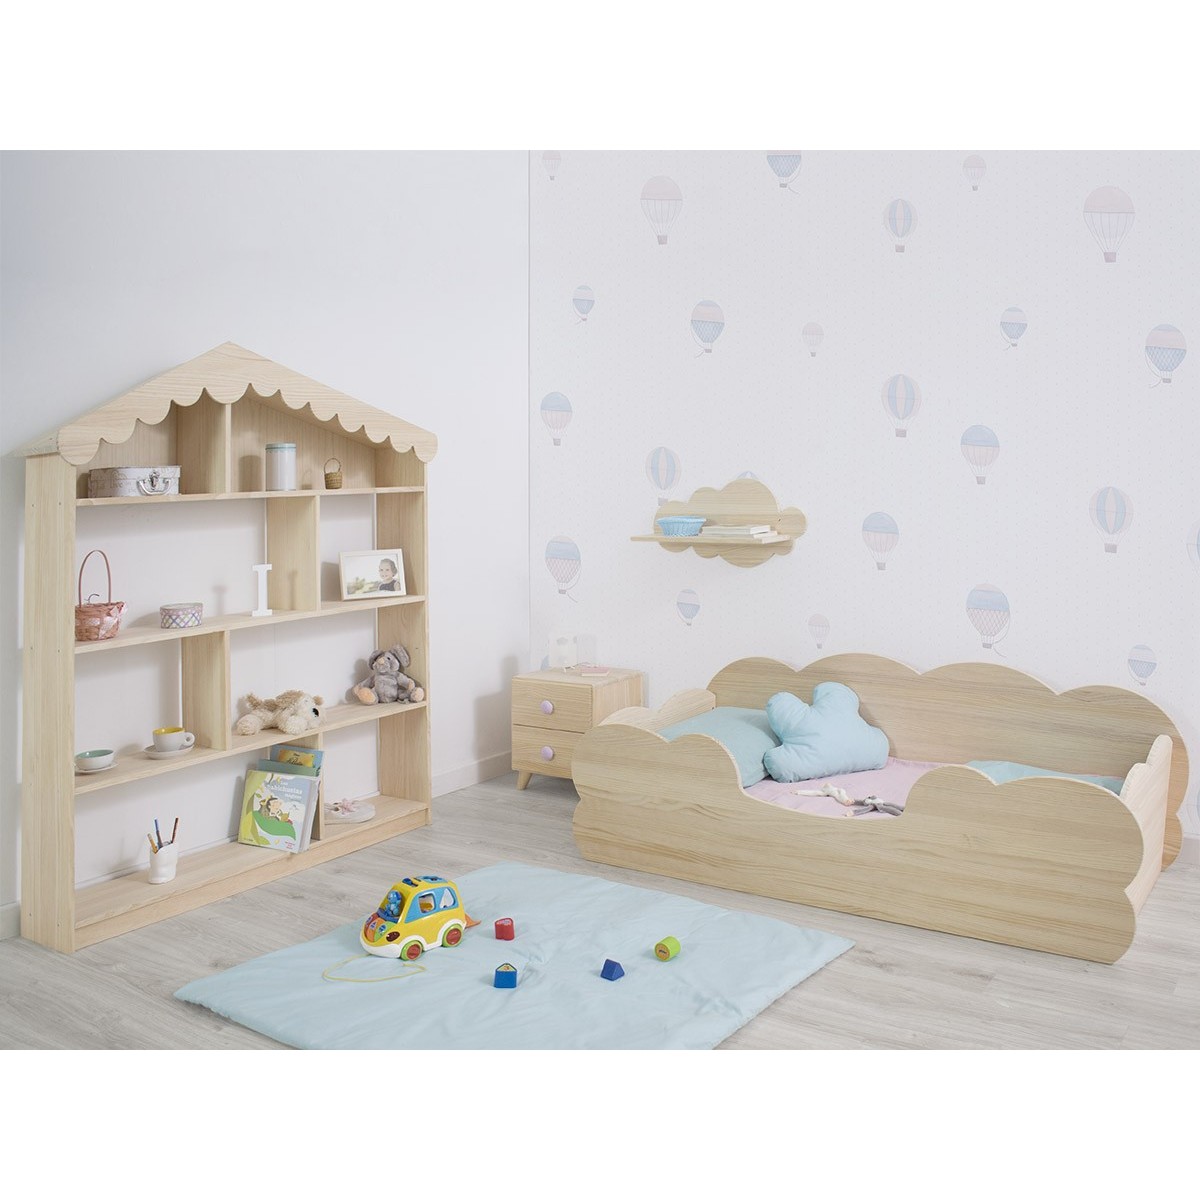 Una cameretta per neonati con una mensola in legno e una cornice in legno  con sopra la lettera h